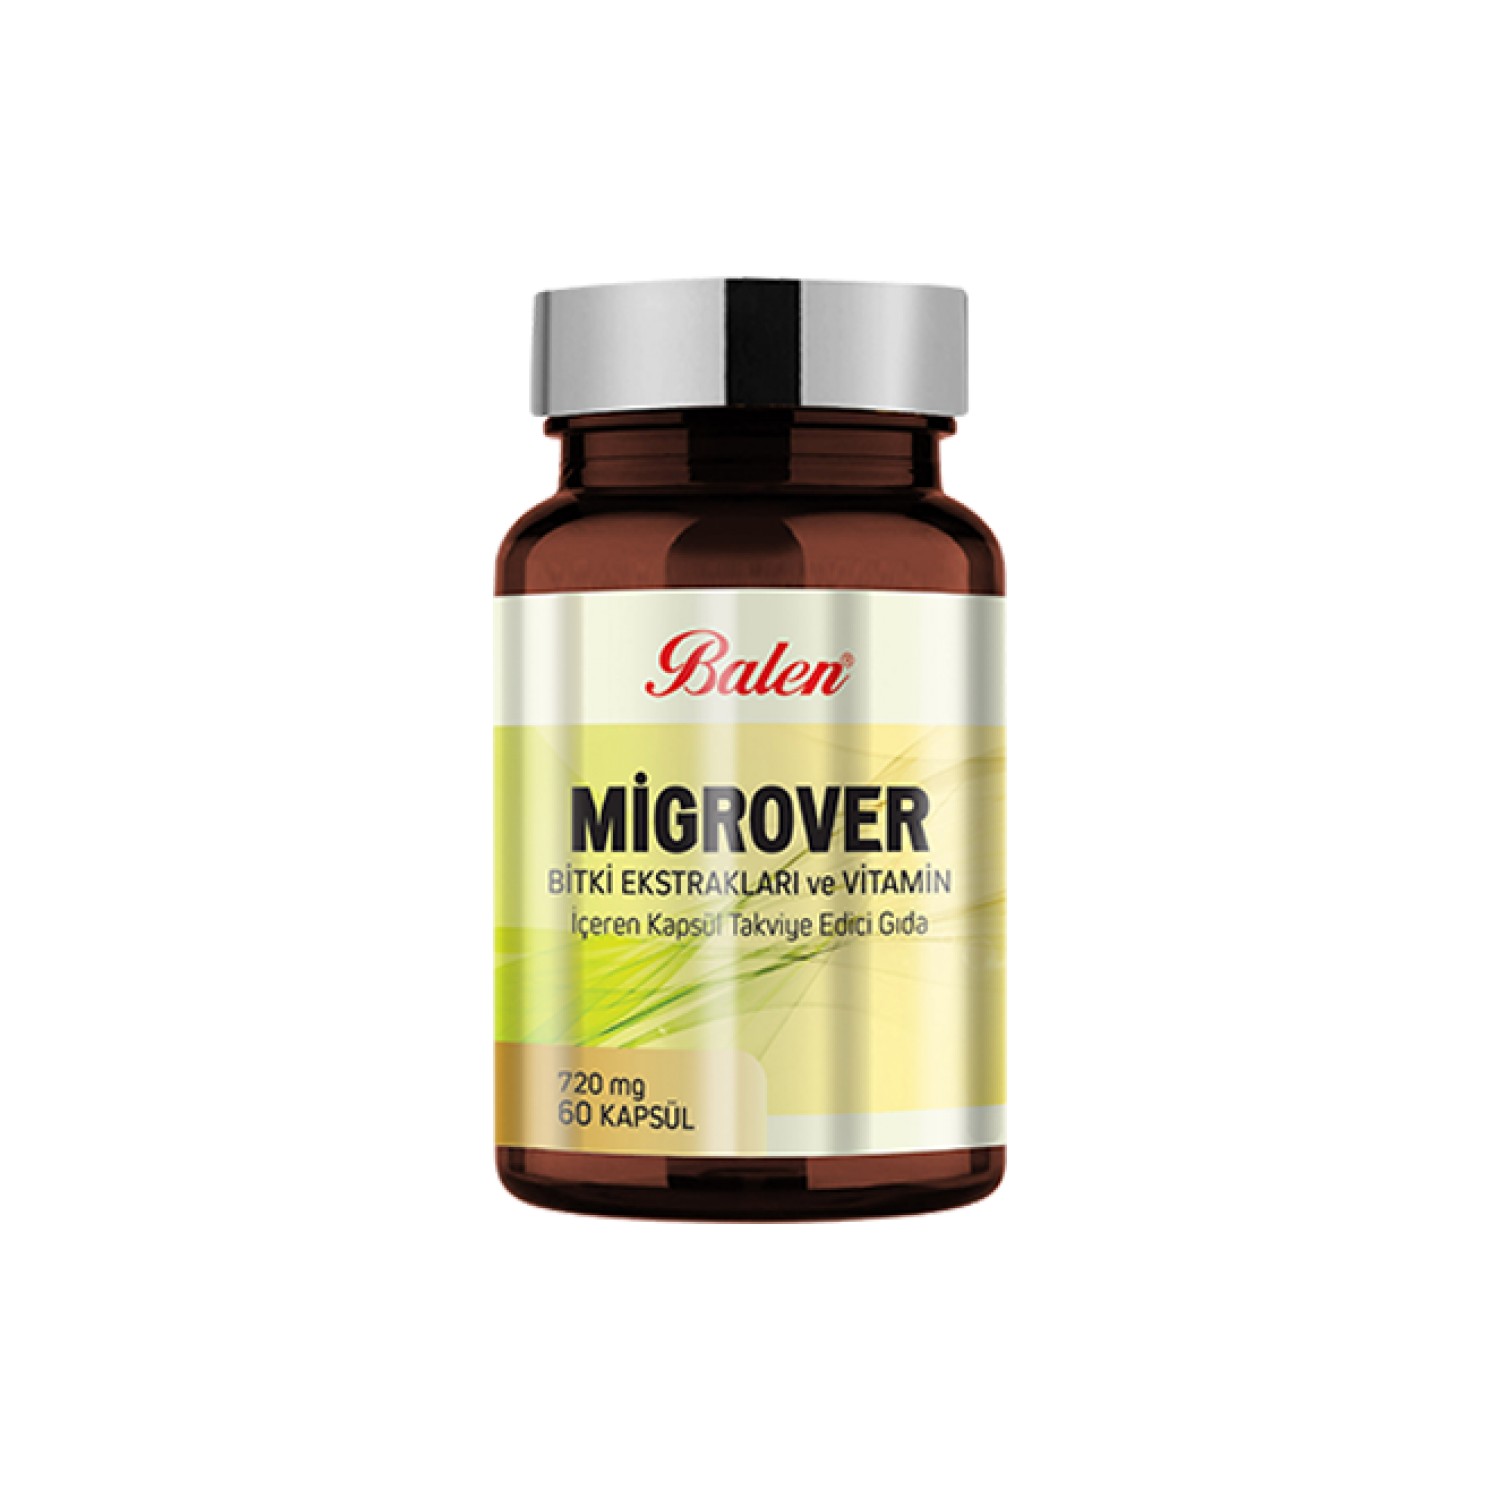 Экстракты трав и витаминов Migrover 720 мг, 60 капсул кальций цитрат atech premium 720 мг 60 шт капсулы